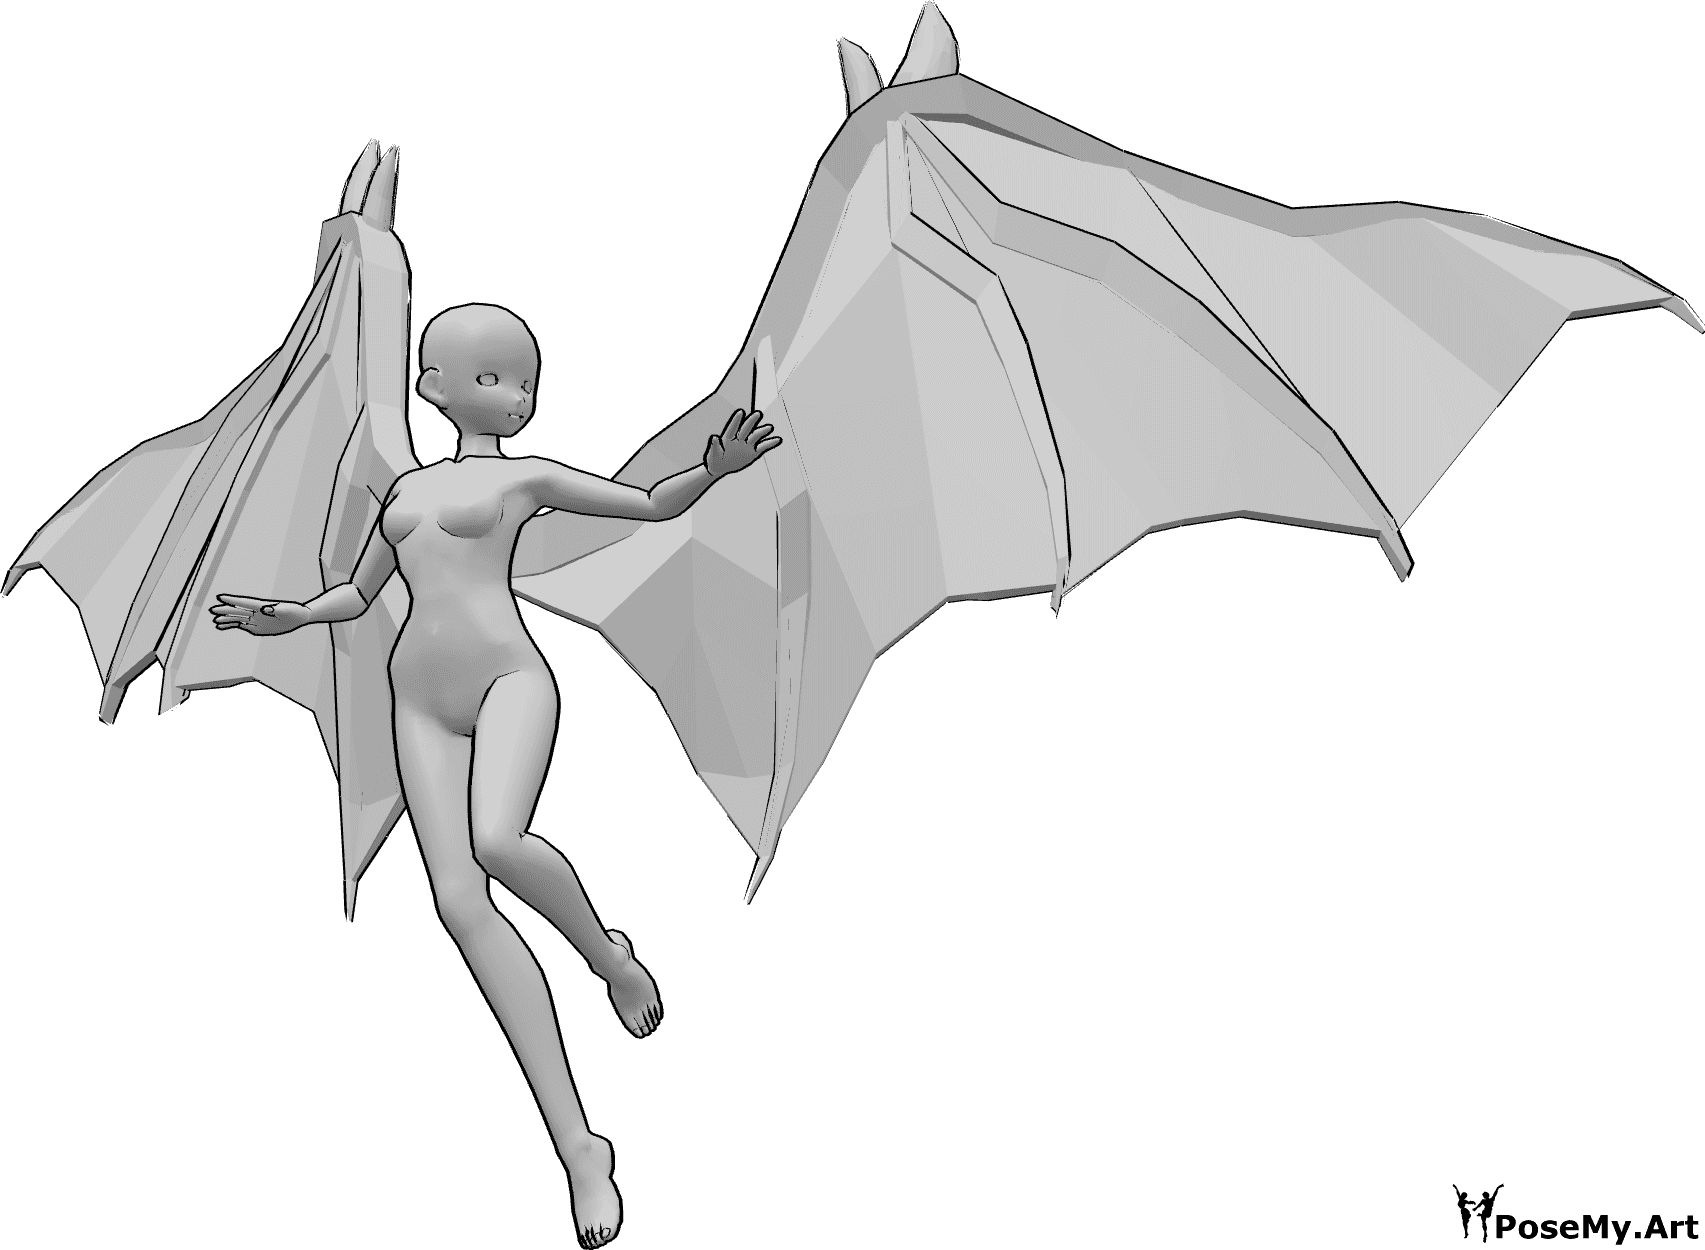 Riferimento alle pose- Posa di volo in stile anime - Anime femminile con ali da diavolo sta volando e guarda a sinistra